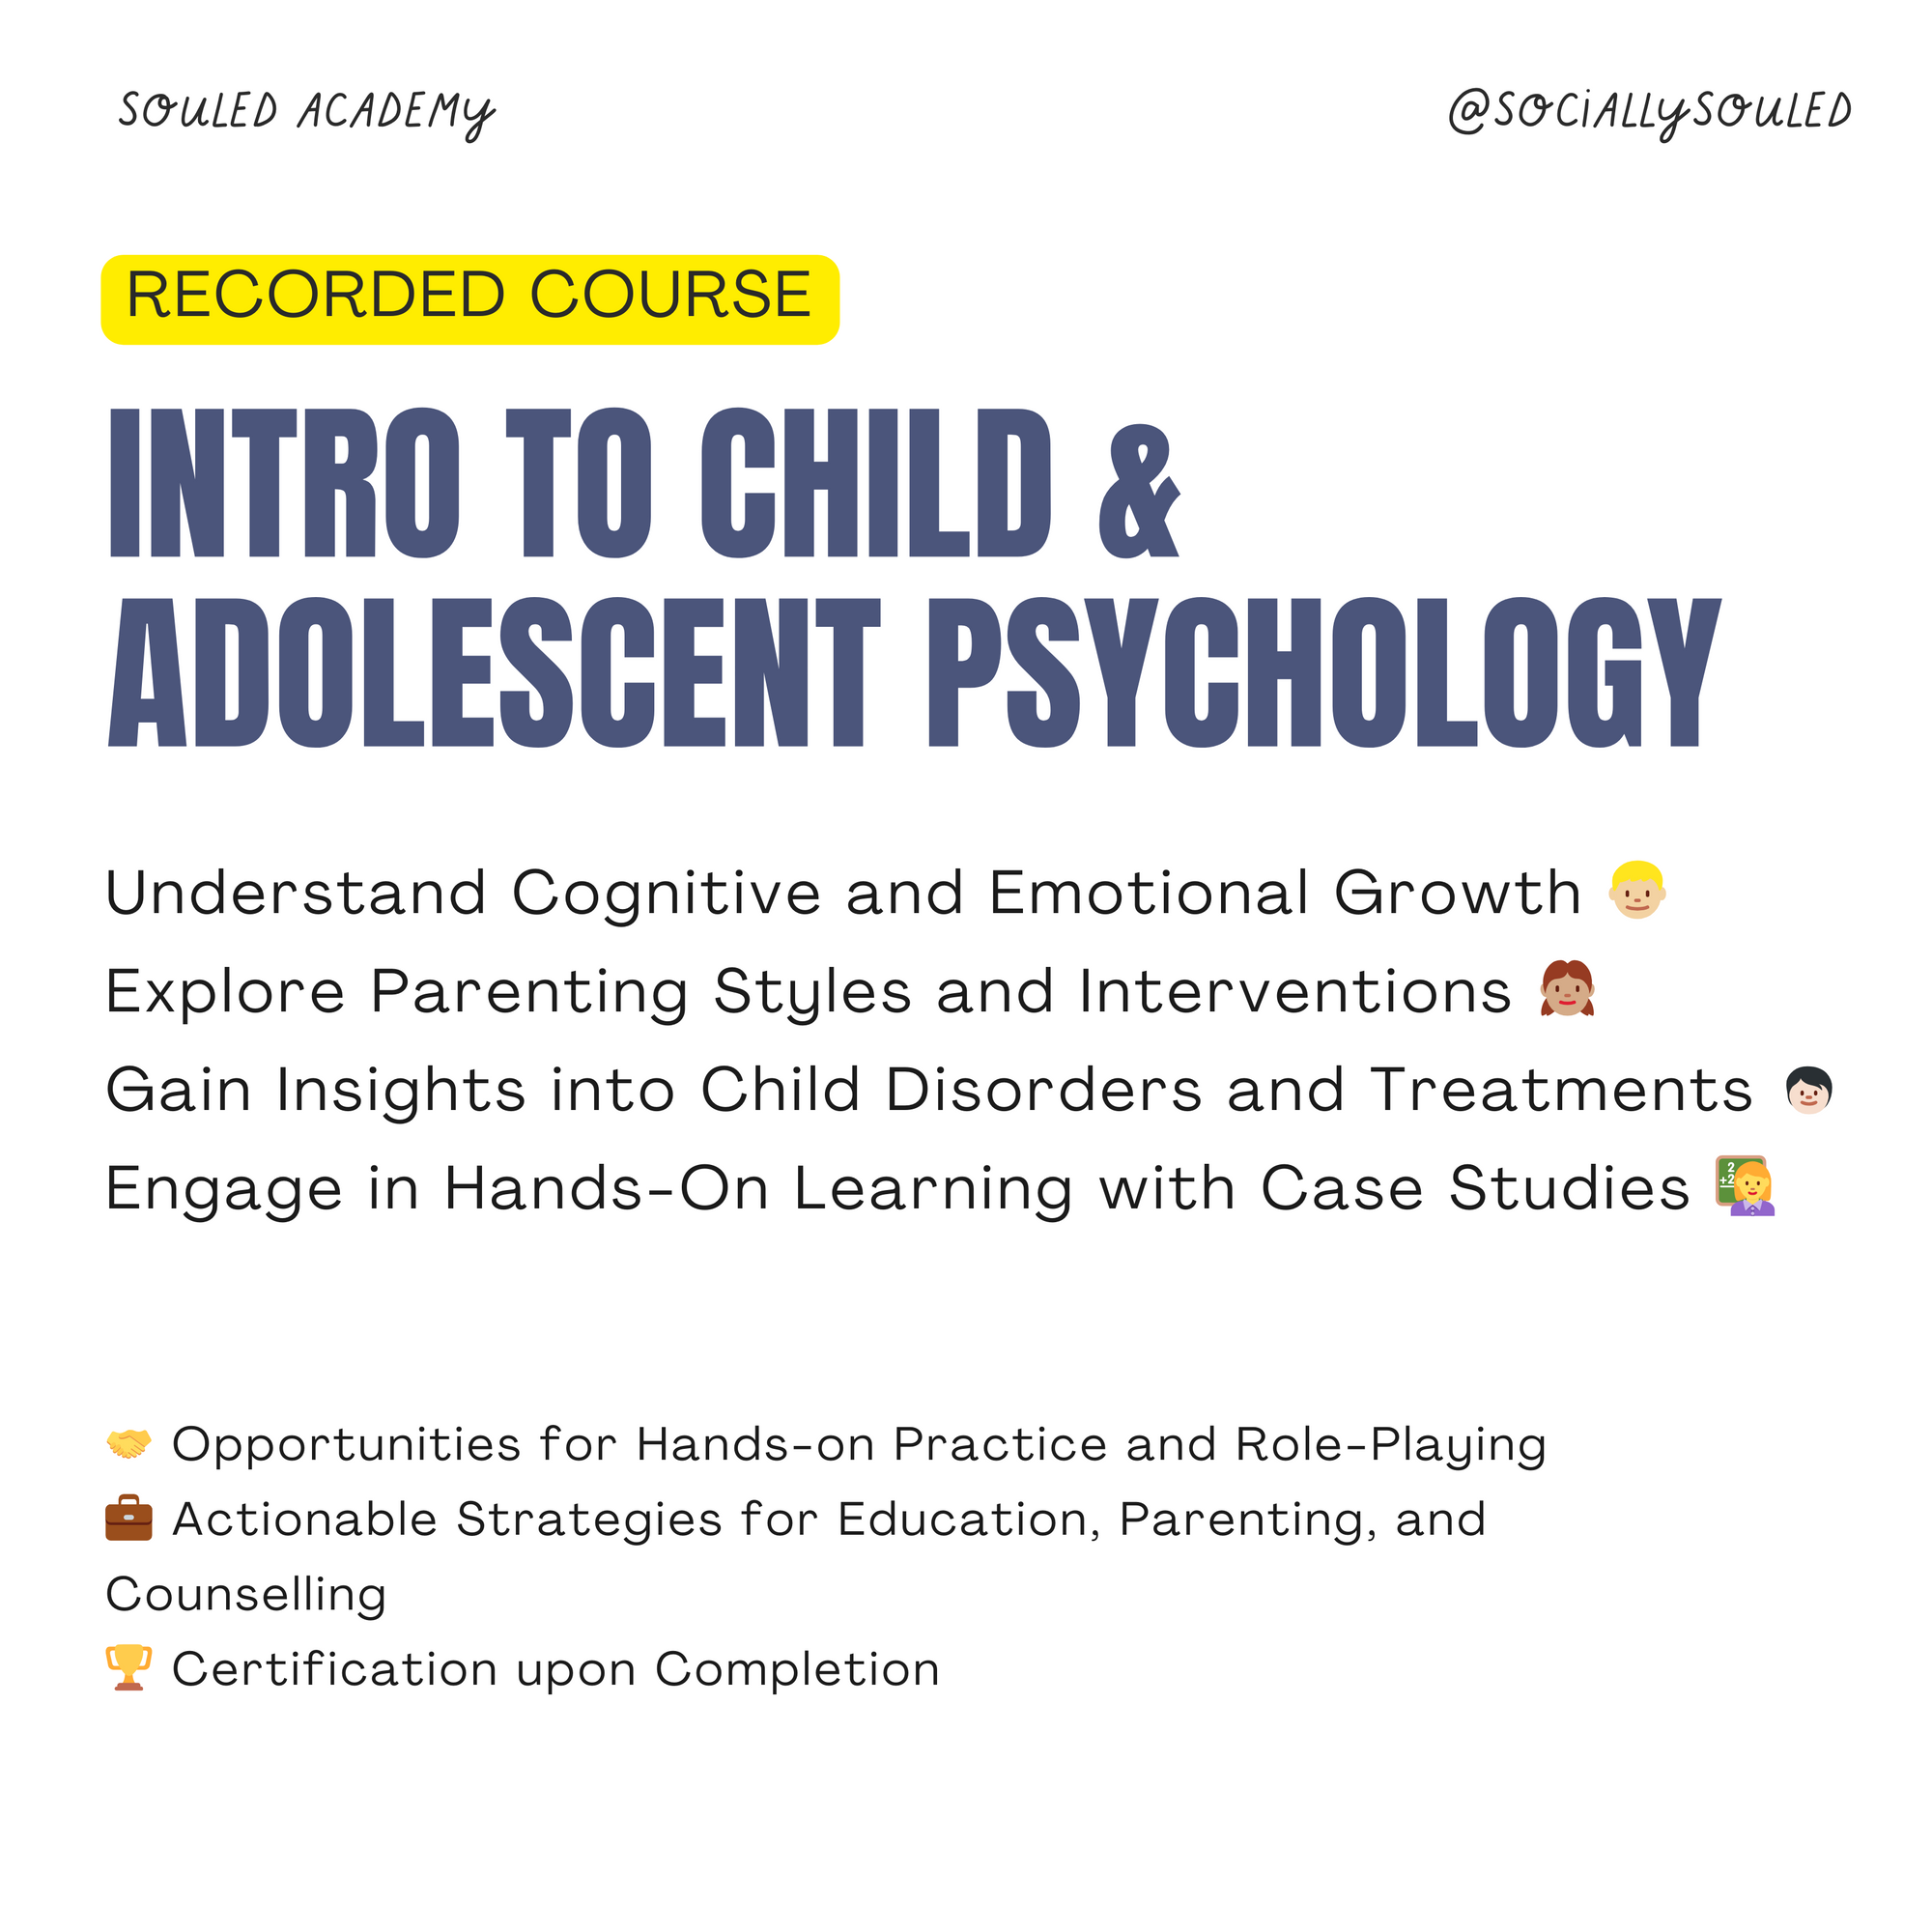 Child & Adolescent Psychology Course